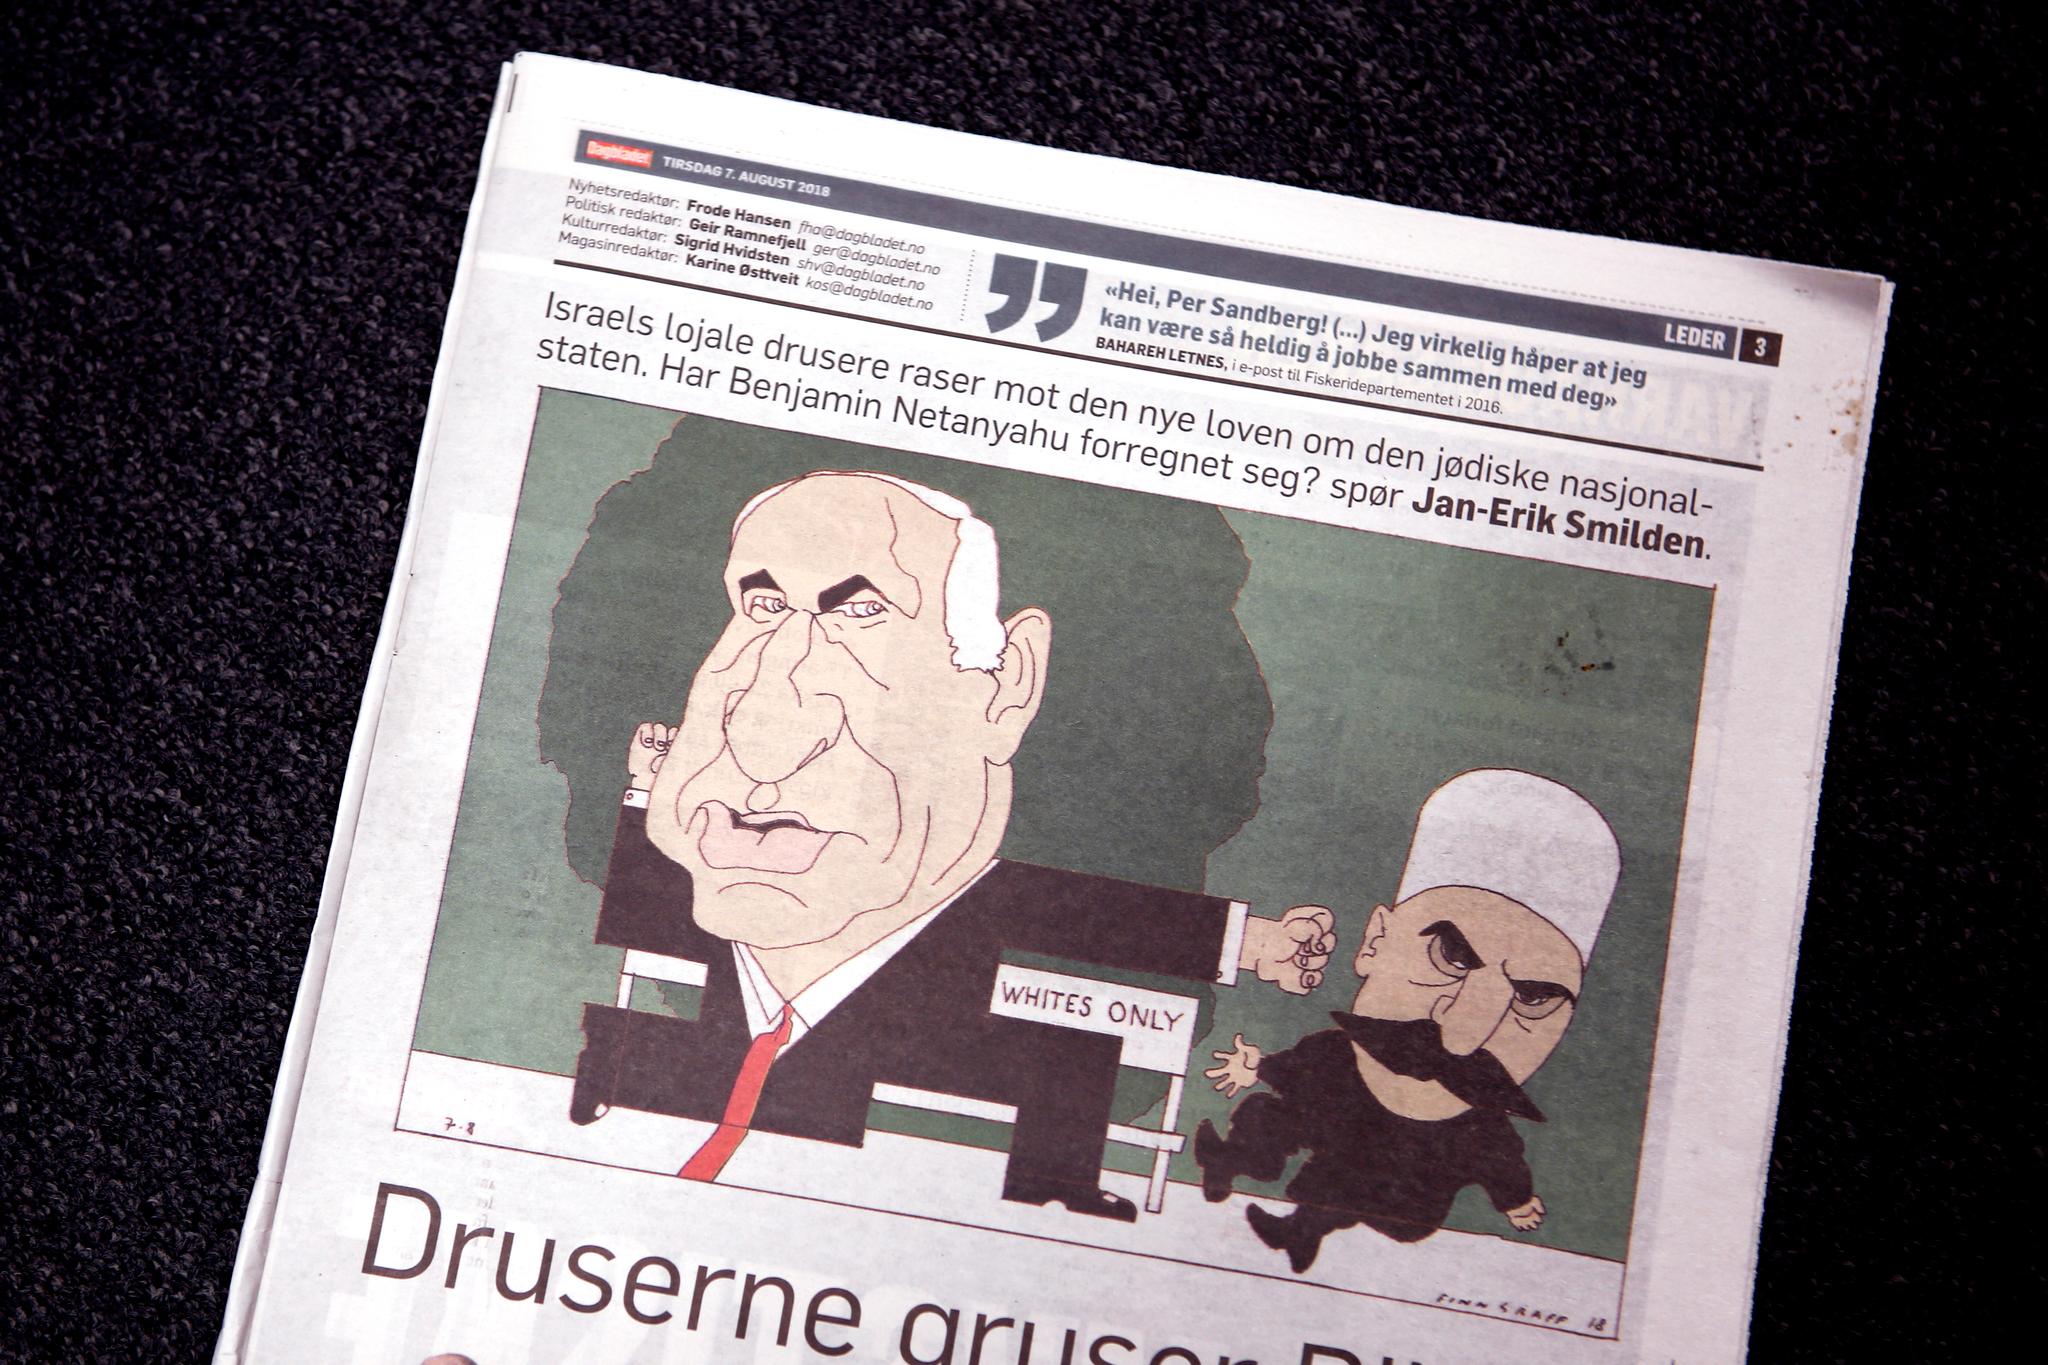 Den israelske ambassaden reagerte strekt på Finn Graffs Tegning i Dagbladet torsdag 7. august. PFU mener tegningen er innenfor de etiske rammene til pressen. Foto: Marianne Løvland / NTB scanpix